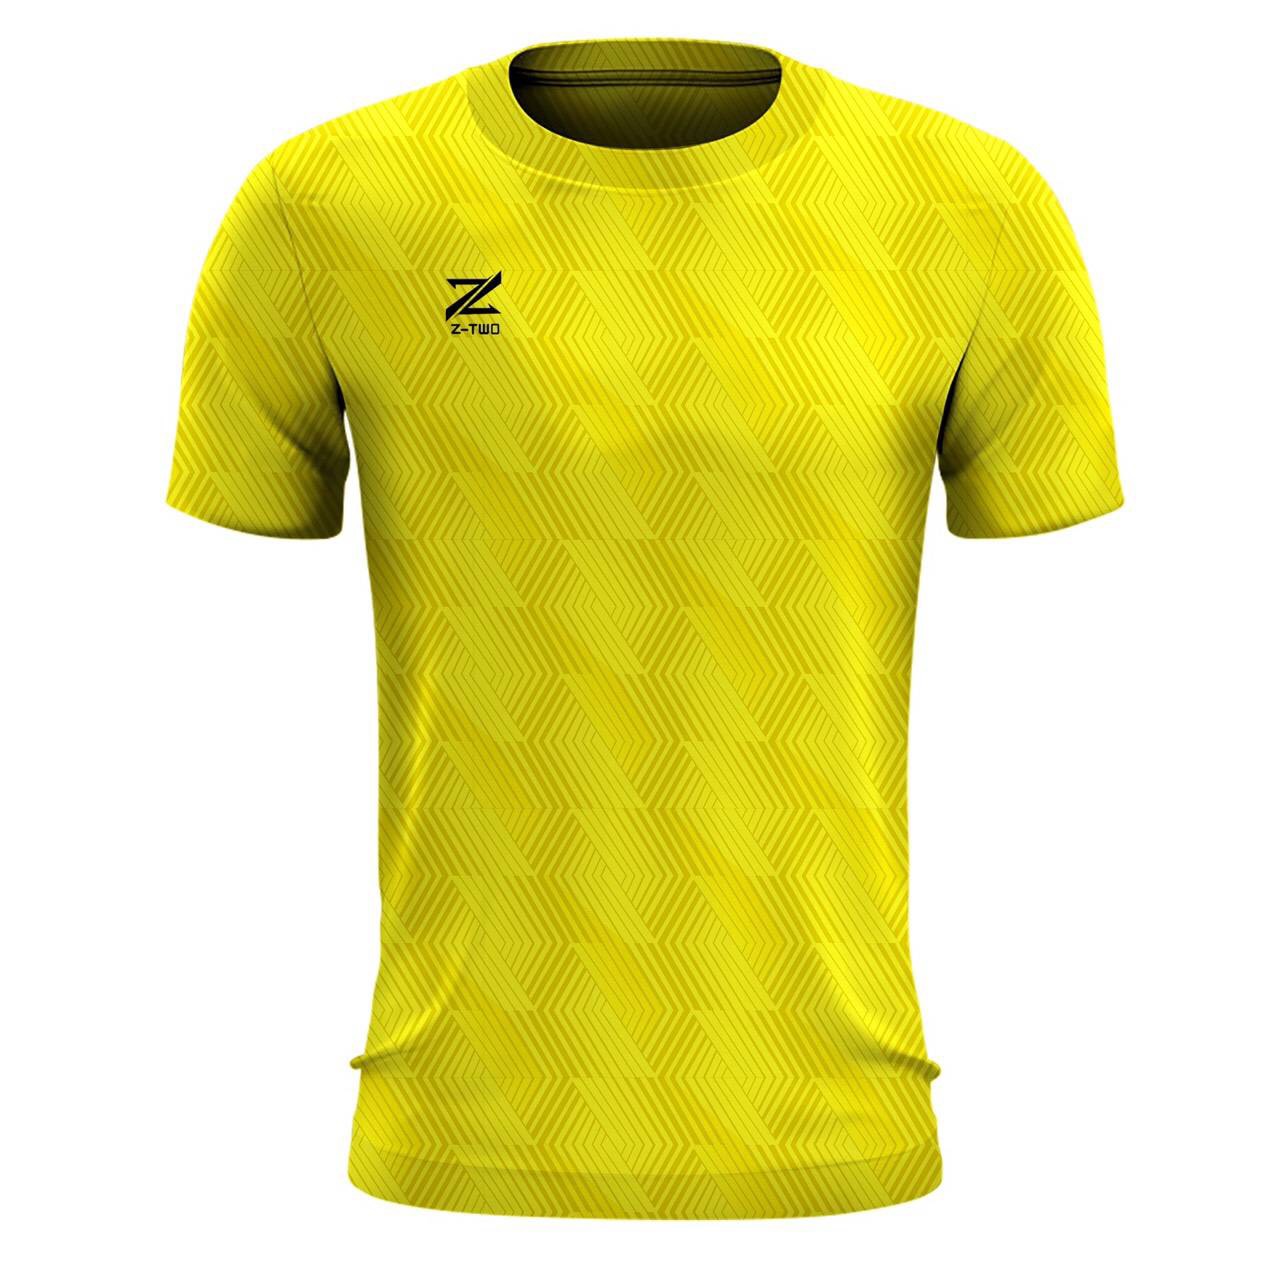 ภาพอธิบายเพิ่มเติมของ Z two pro เสื้อกีฬาผ้าพิมพ์ลาย ซีทูโปร (สีเหลือง)